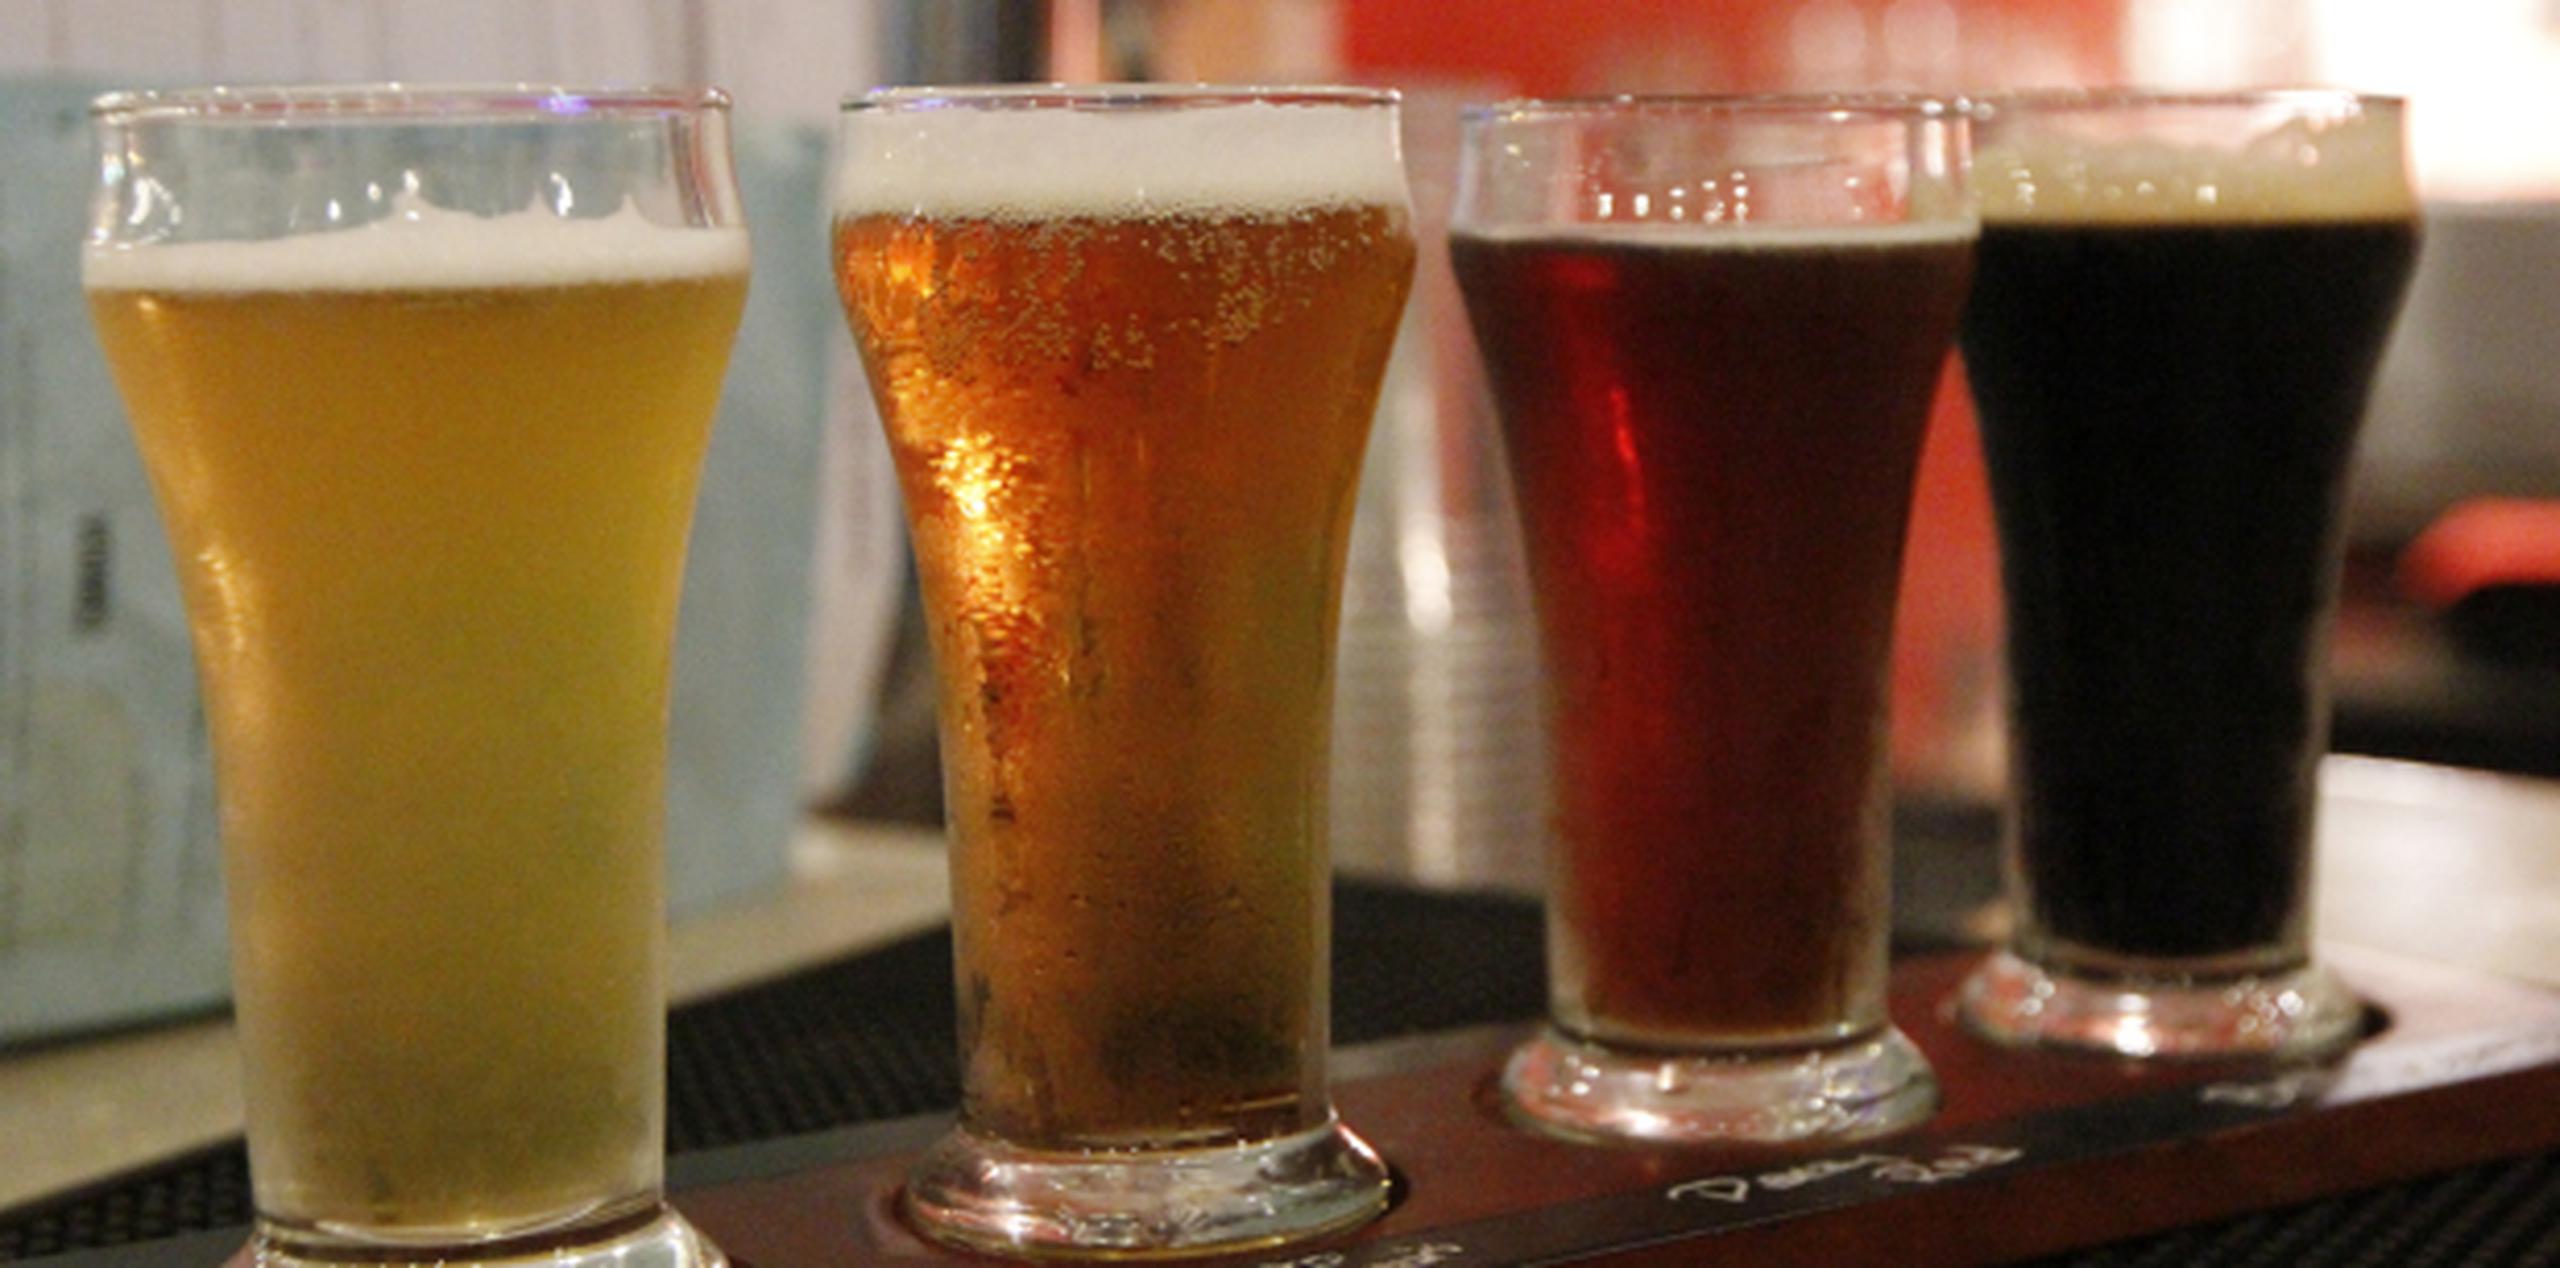 Una ley aprobada en 2015 prohíbe obtener una licencia para vender cervezas a menos que haya tenido un estatus legal en Estados Unidos o haya sido ciudadano estadounidense al menos un año.(Archivo)